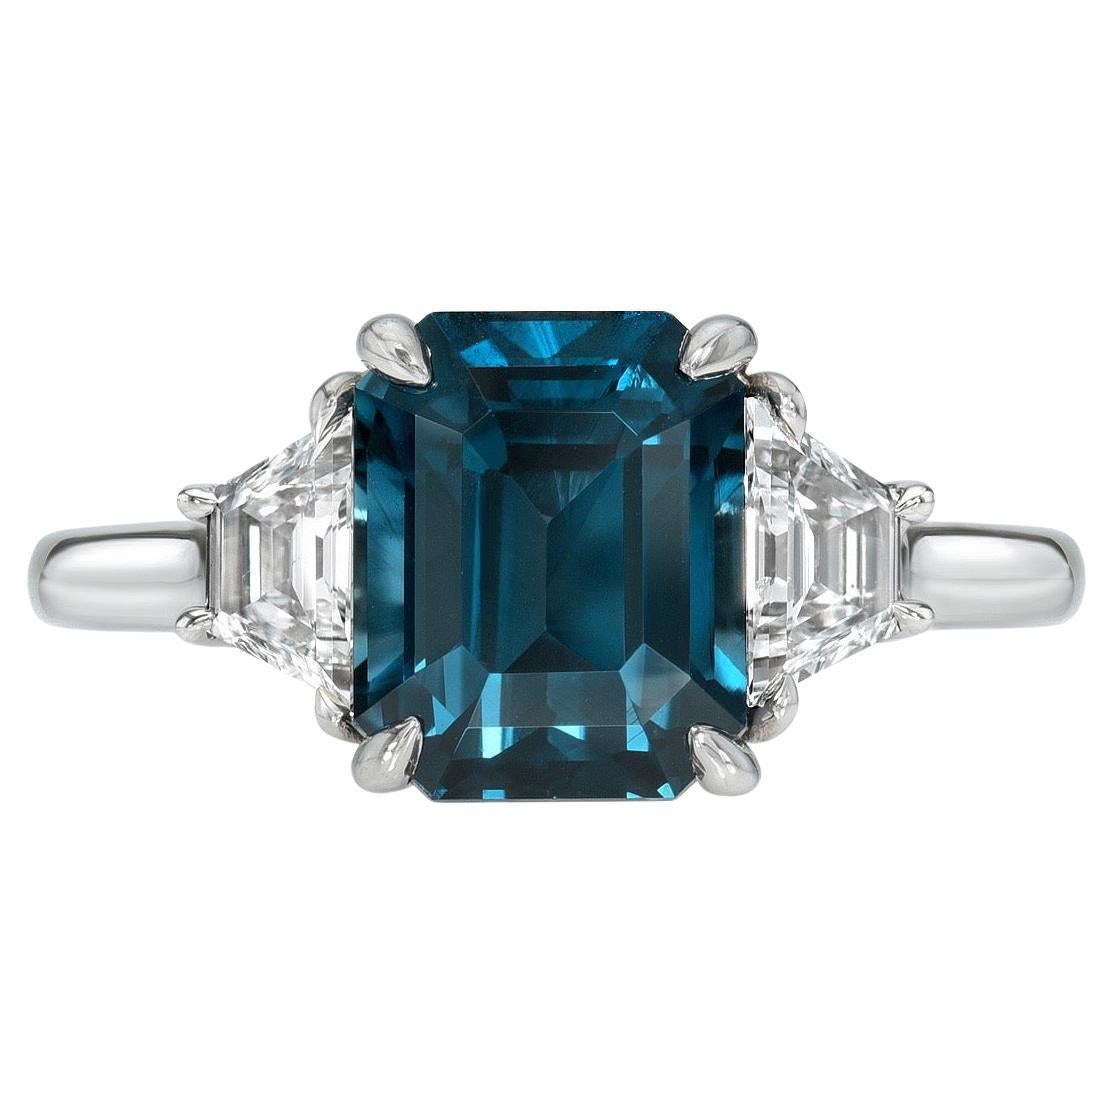 Teal Blue Sapphire Ring 4.16 Carat Emerald Cut Sri Lanka